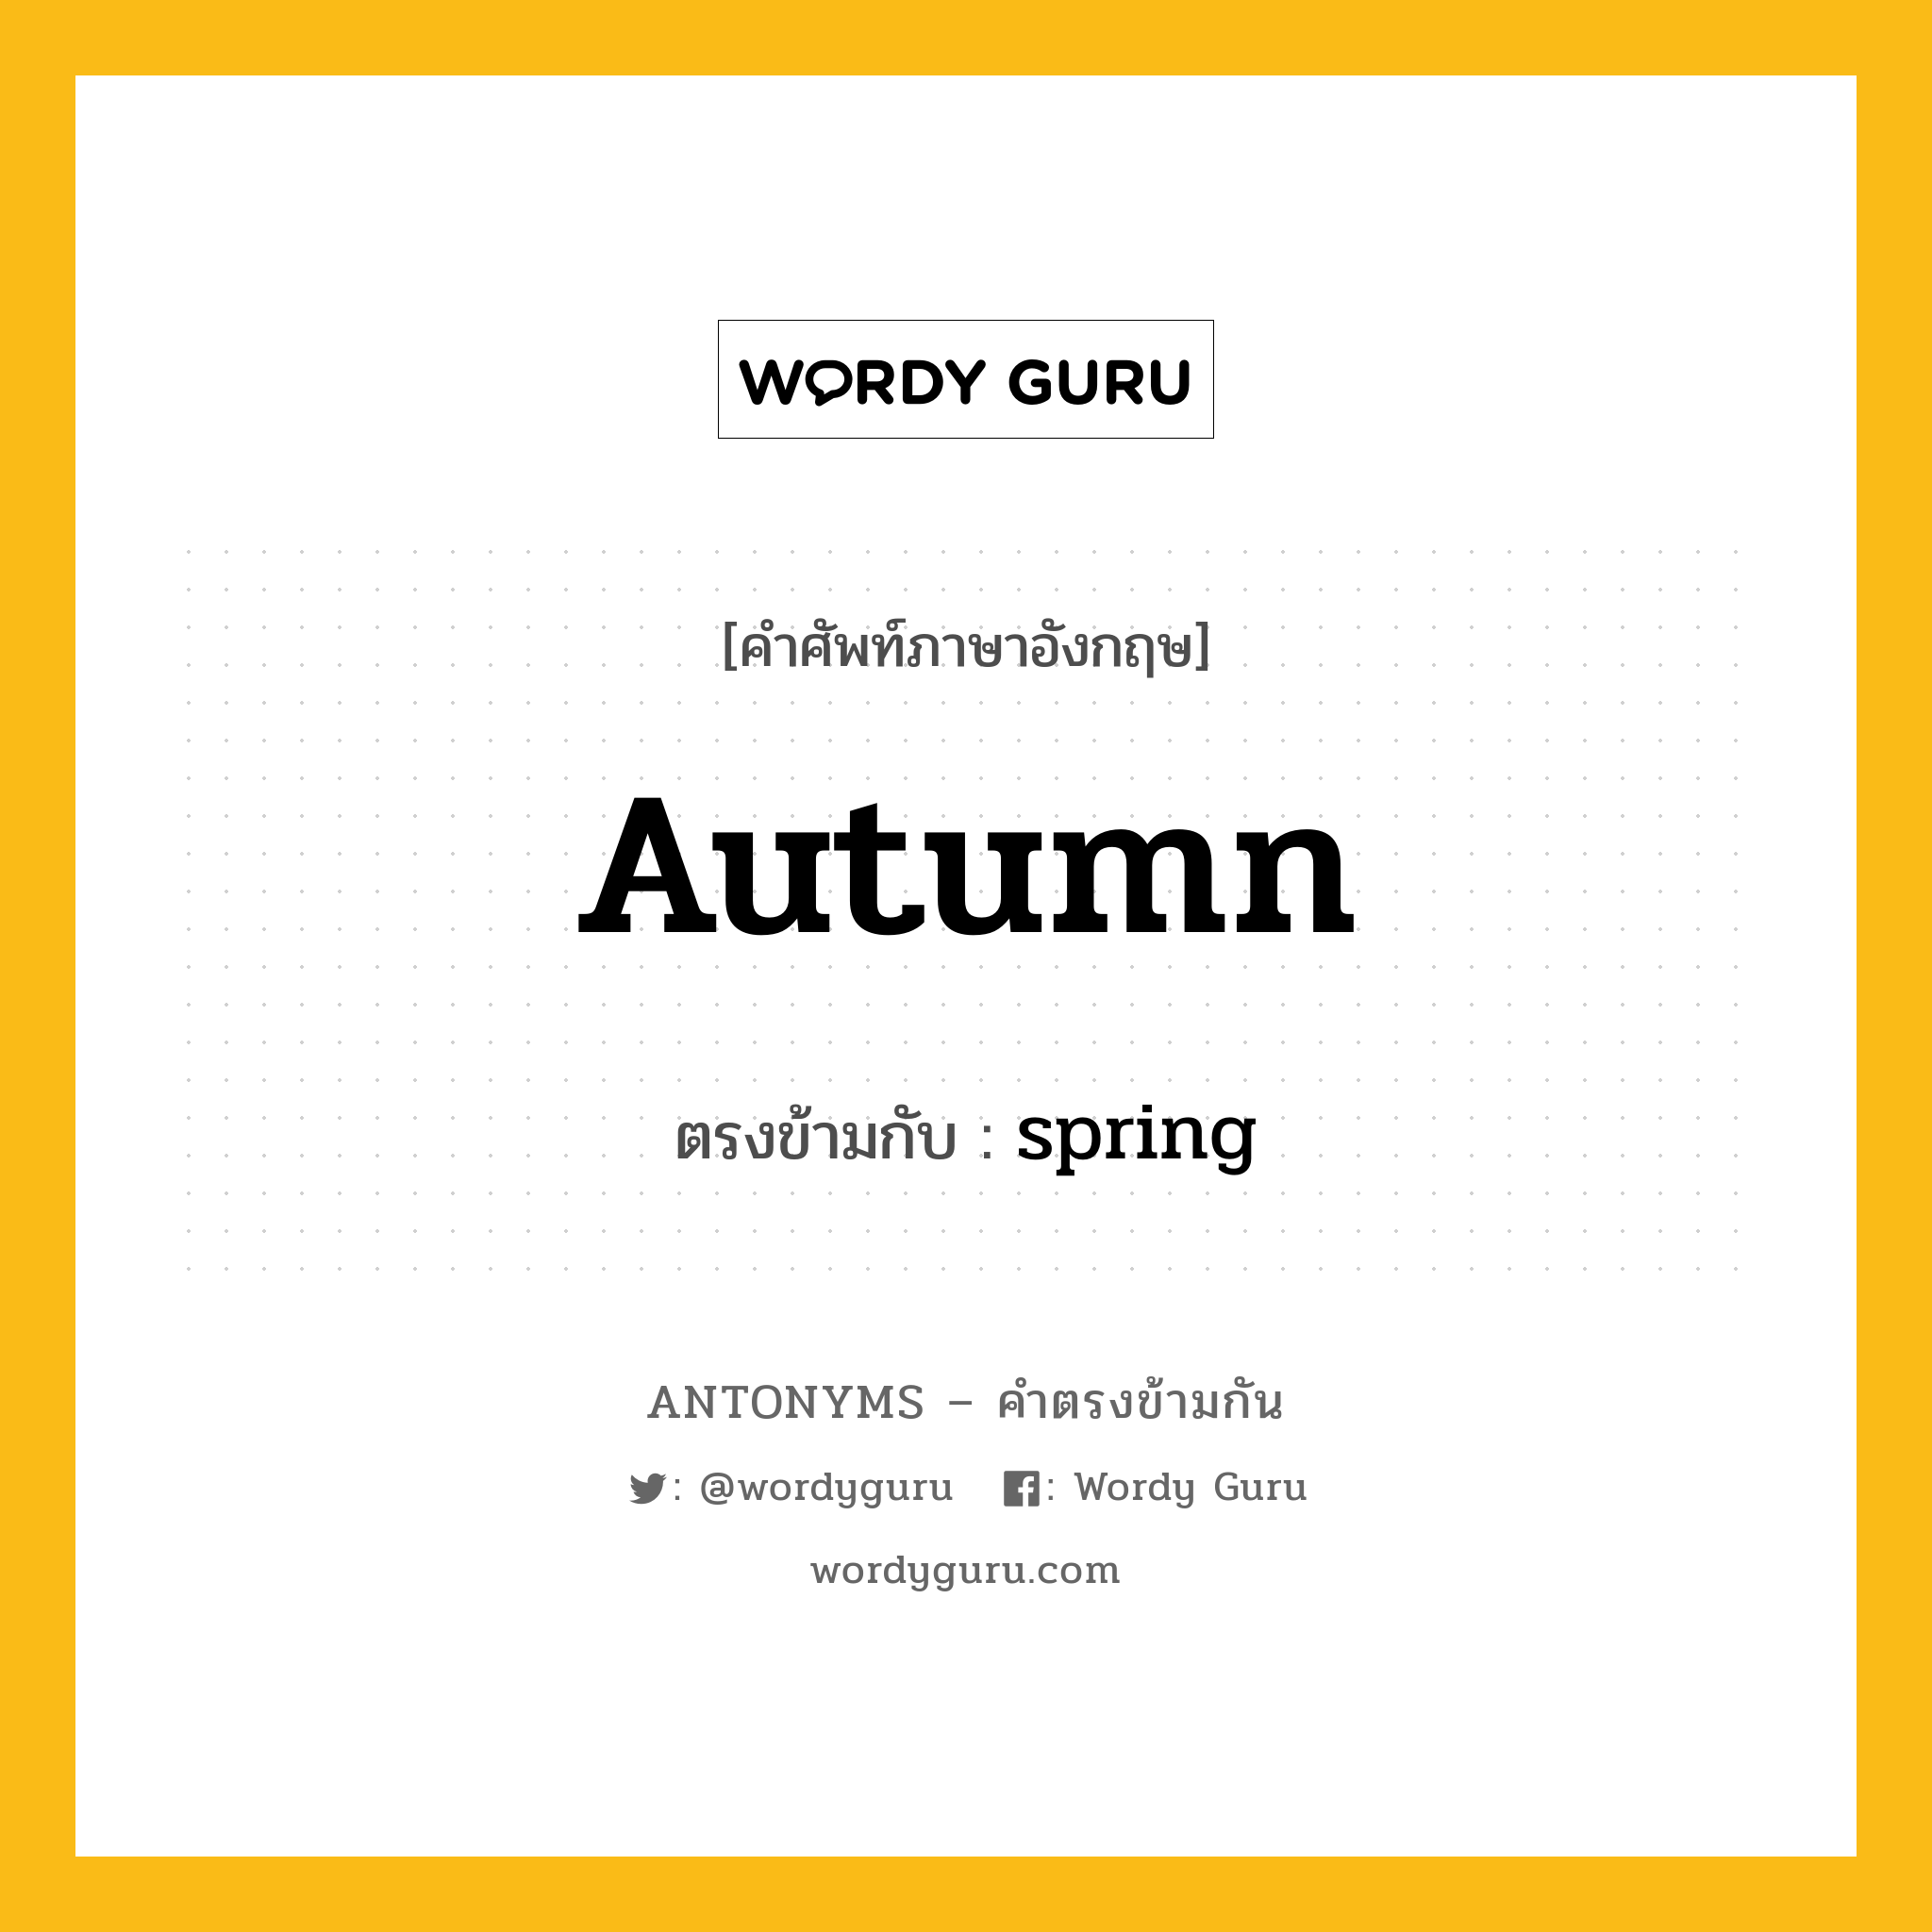 autumn เป็นคำตรงข้ามกับคำไหนบ้าง?, คำศัพท์ภาษาอังกฤษ autumn ตรงข้ามกับ spring หมวด spring